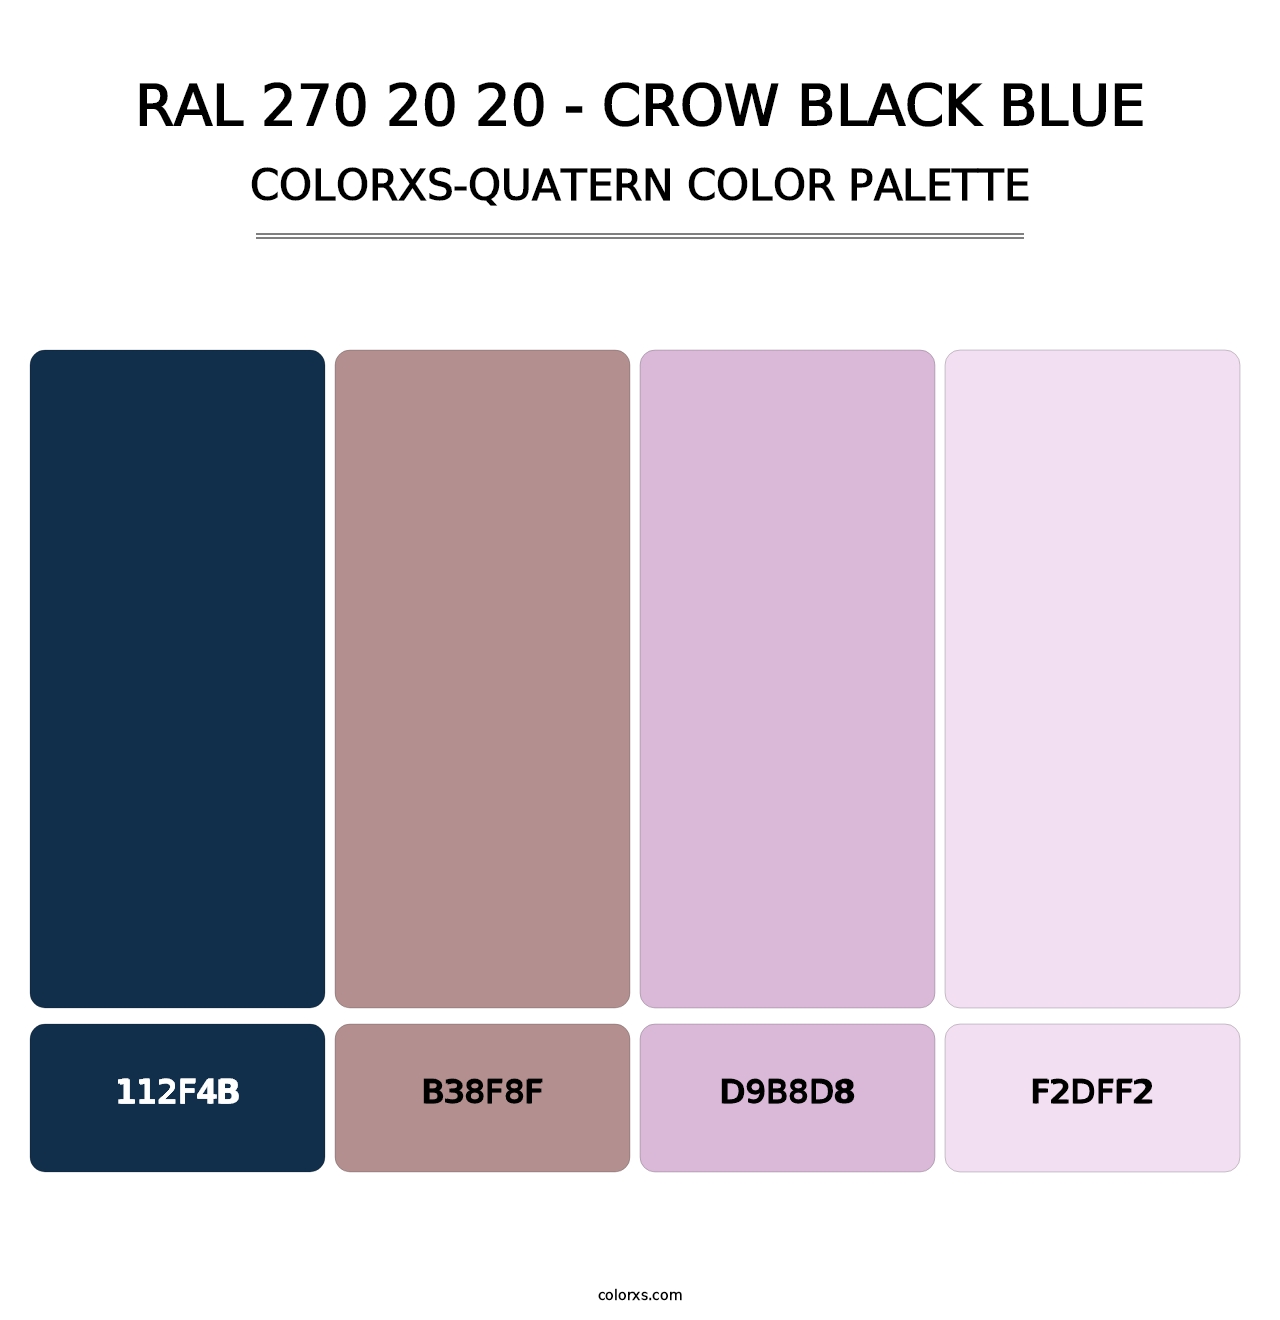 RAL 270 20 20 - Crow Black Blue - Colorxs Quatern Palette